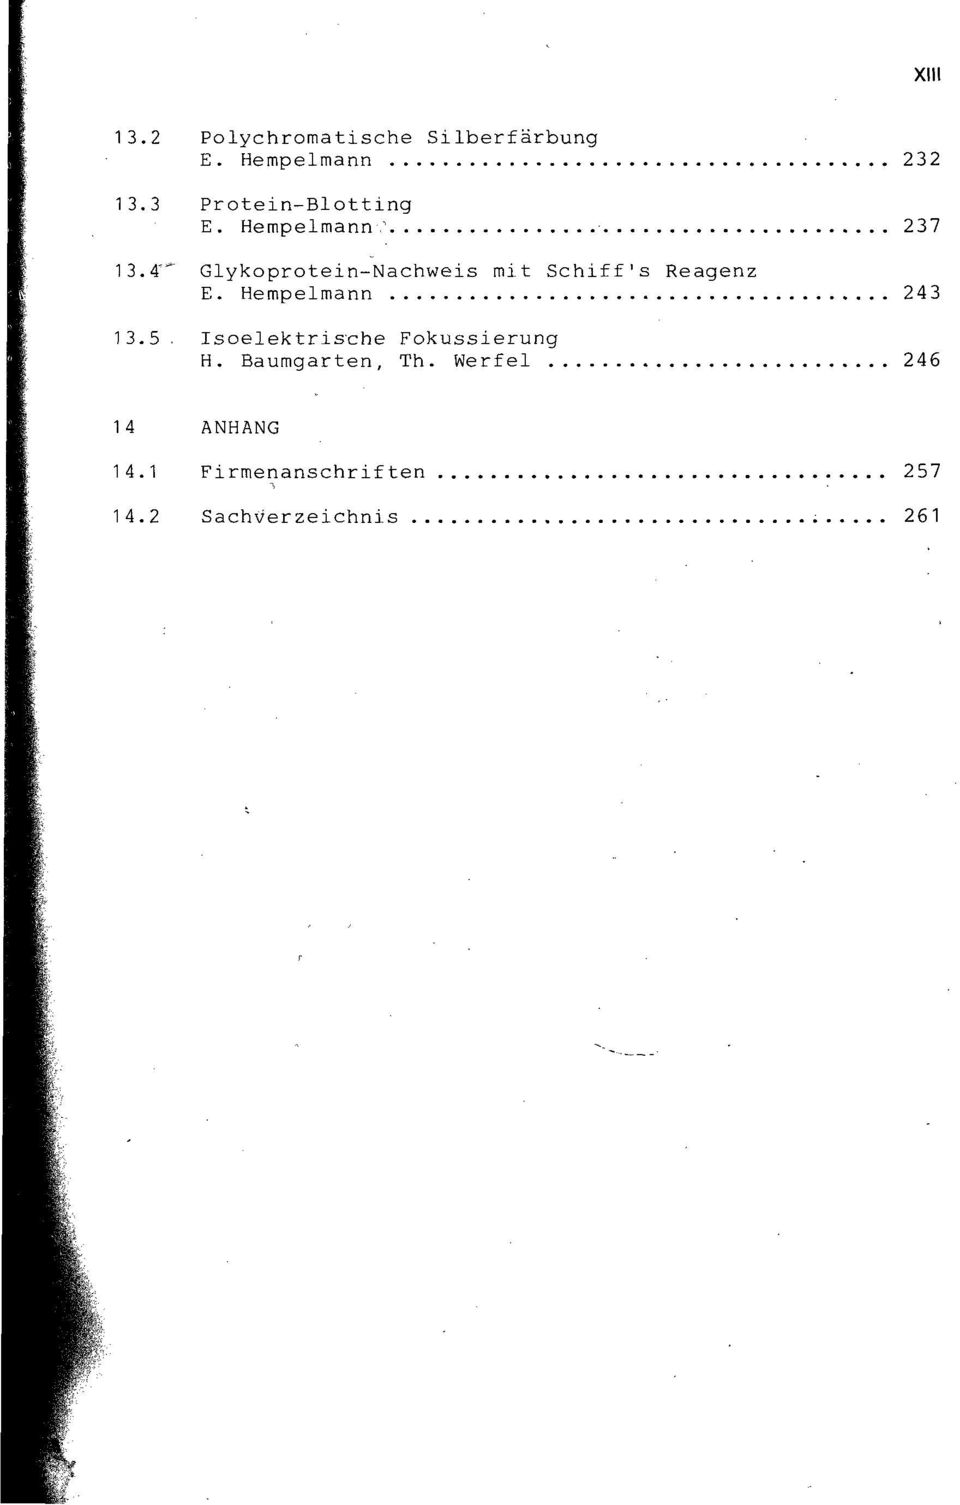 4"* Glykoprotein-Nachweis mit Schiffs Reagenz E. Hempelmann 243 13.5.